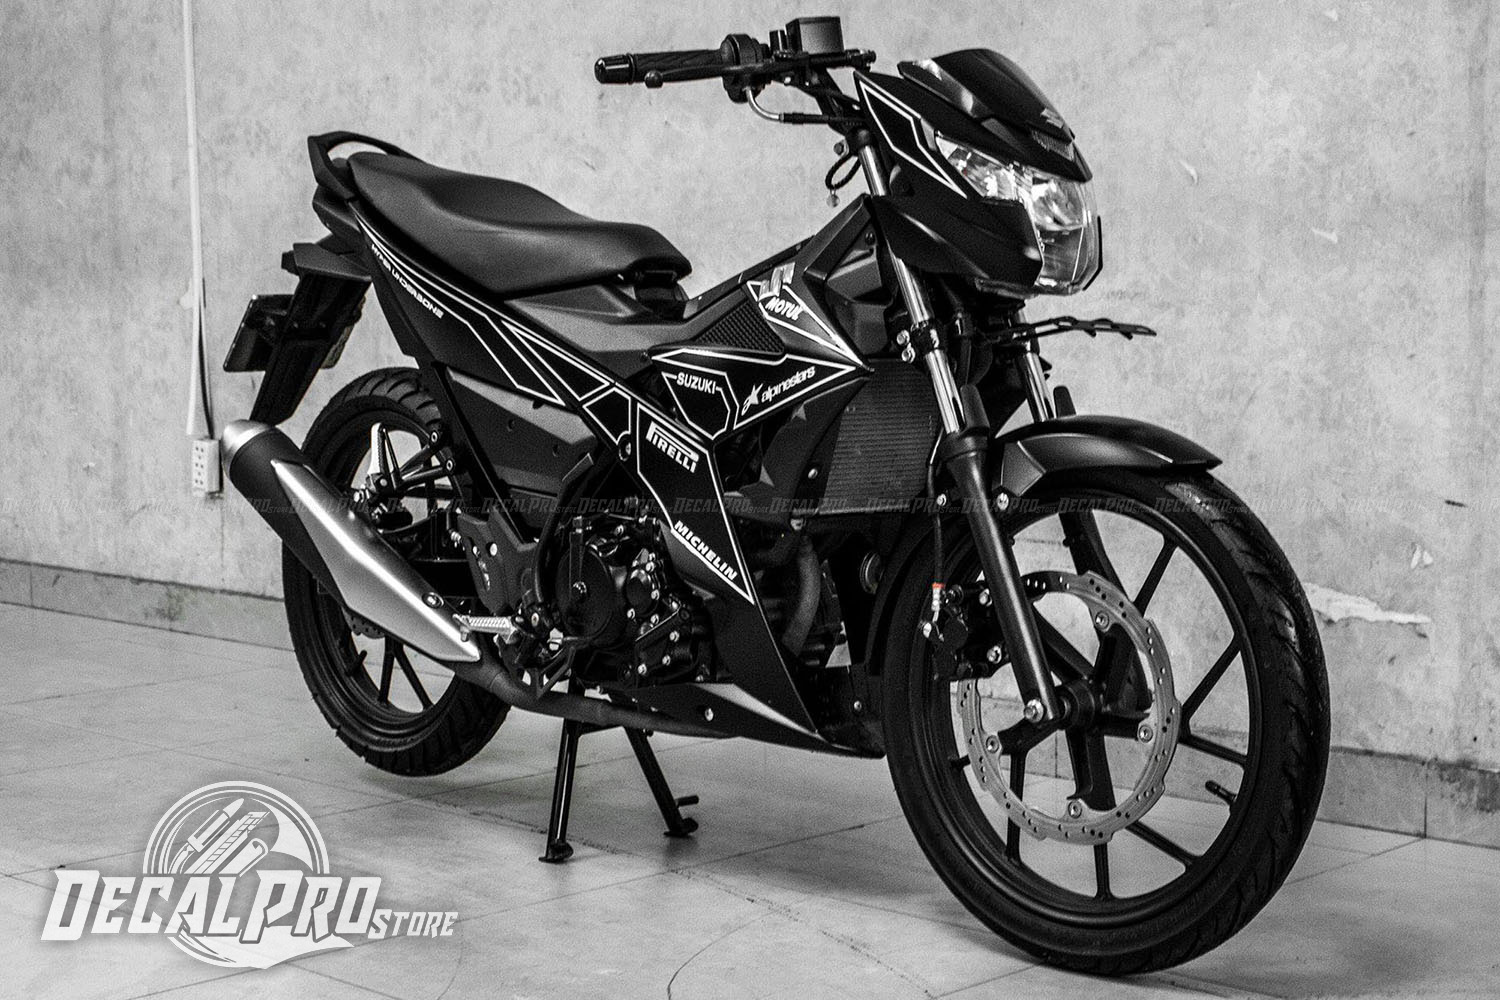 Em yêu Raider Đen Mờ thả  Vietnam Suzuki Motorcycles  Facebook